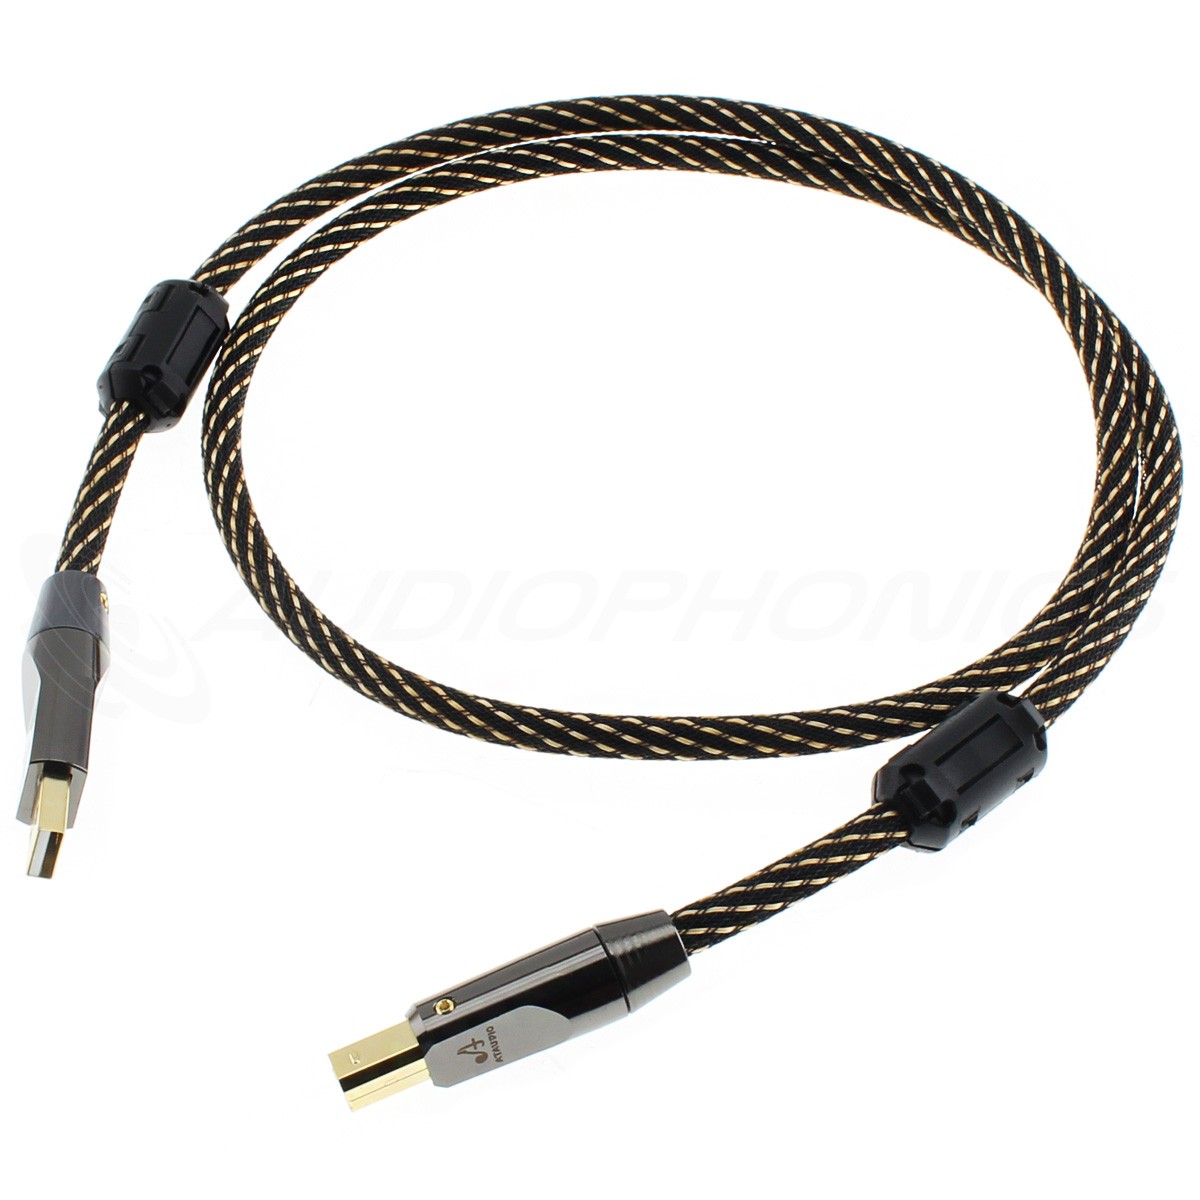 ATAUDIO L-4E6S Male USB-A to Male USB-B Cable Gold Plated OFC Copper 1.5m